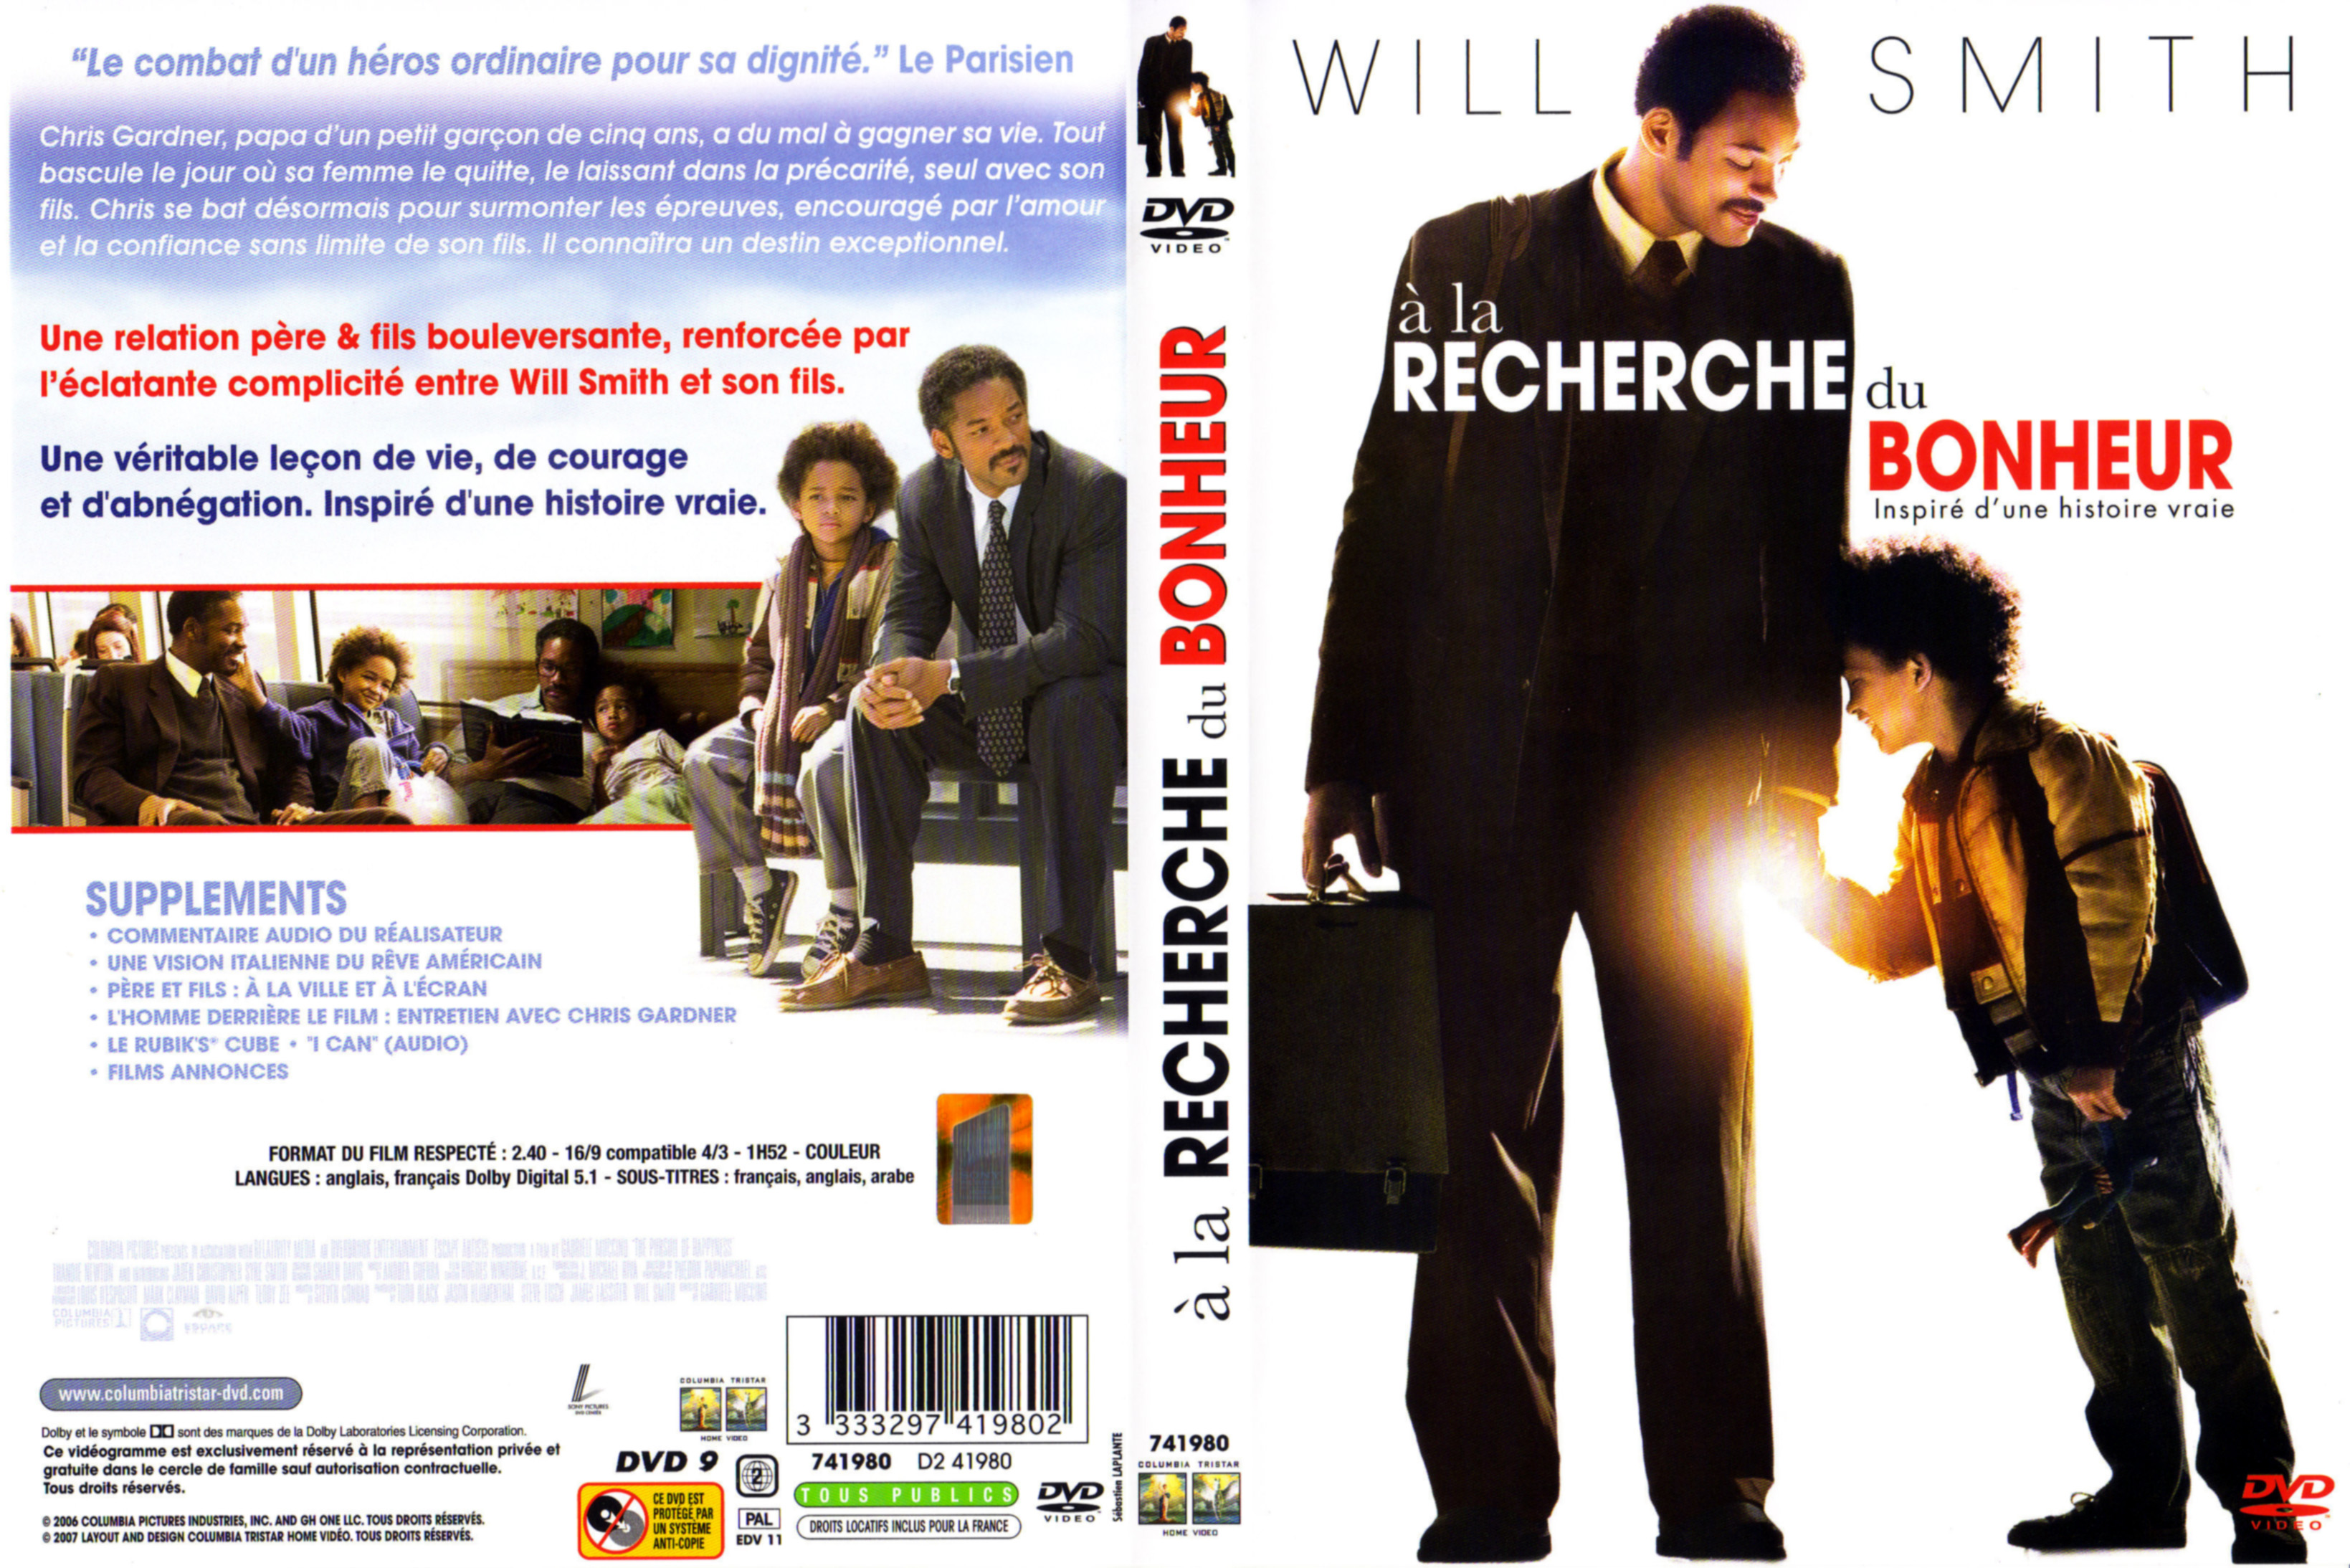 Jaquette DVD A la recherche du bonheur v2